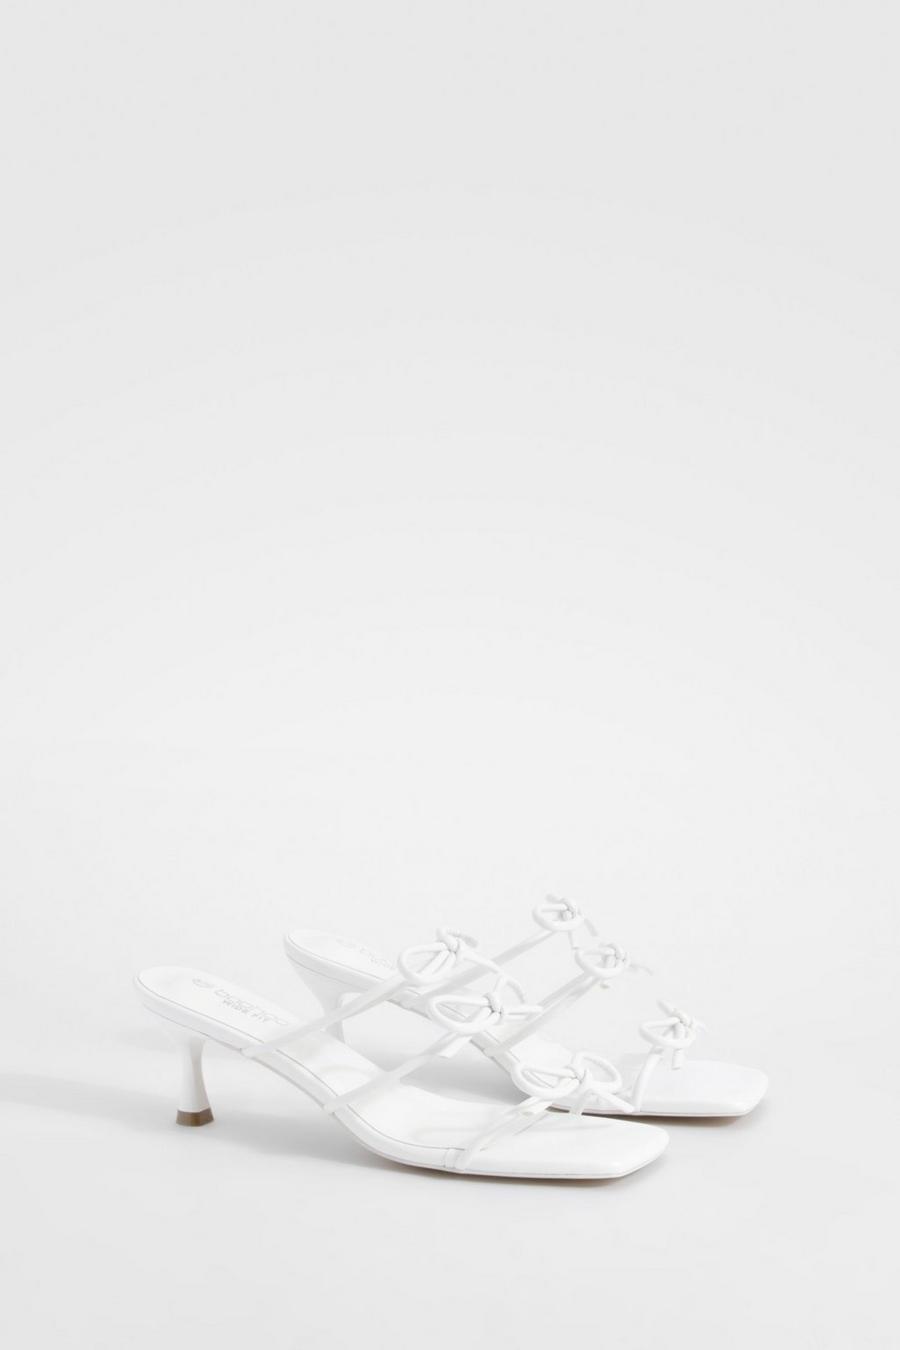 Sandali Mules a calzata ampia con fiocco e tacco basso, White